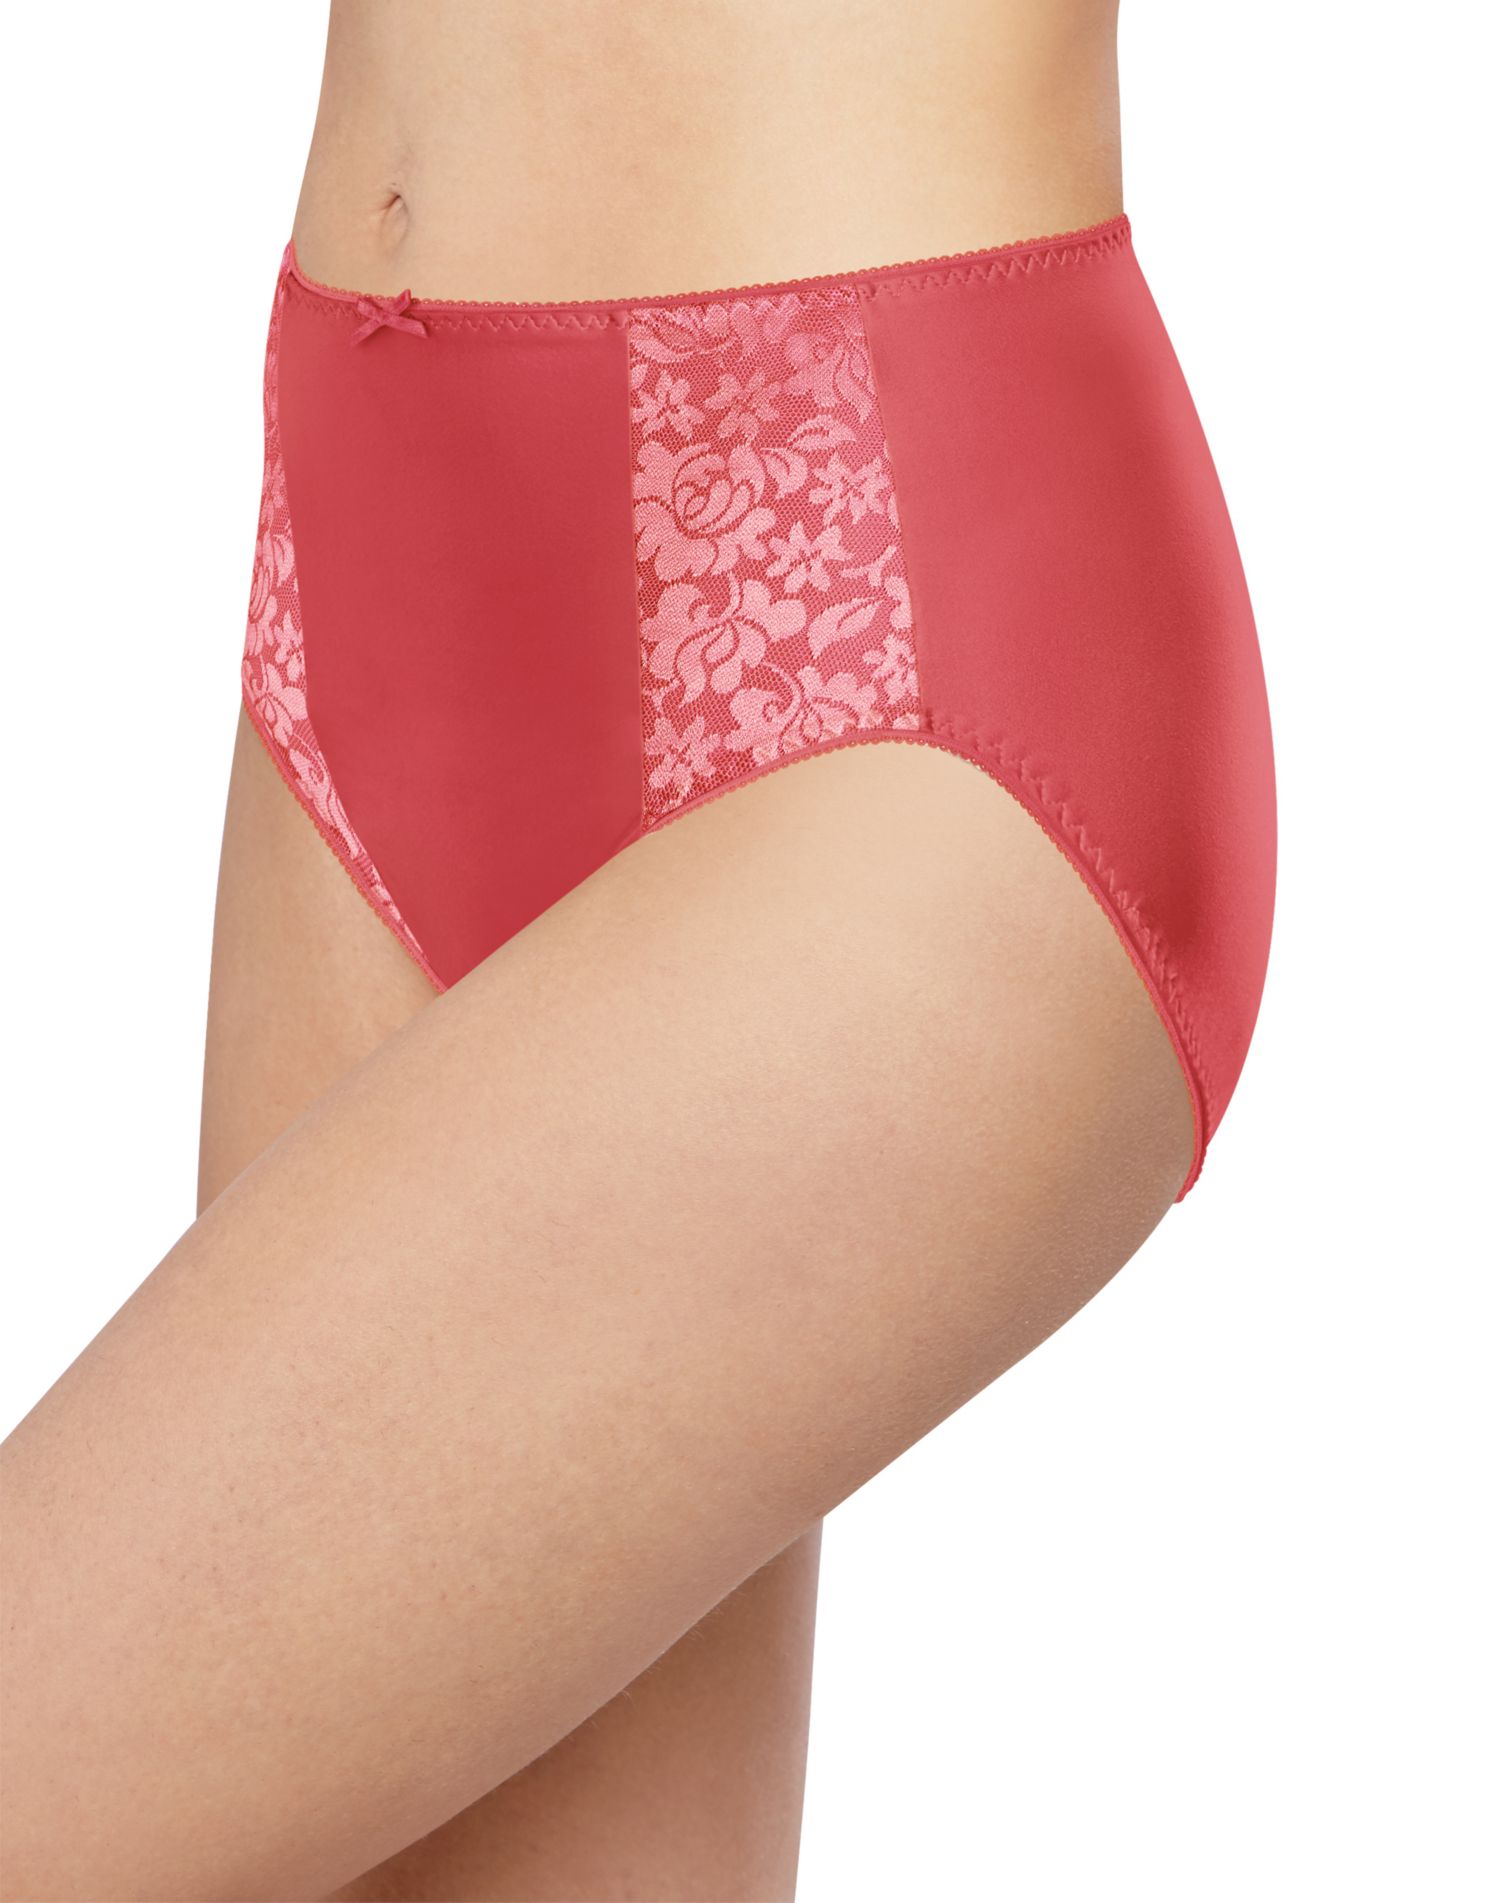 Hanes Womens Nylon Hi-Cut Panties 6-Pack - Apparel Direct Distributor